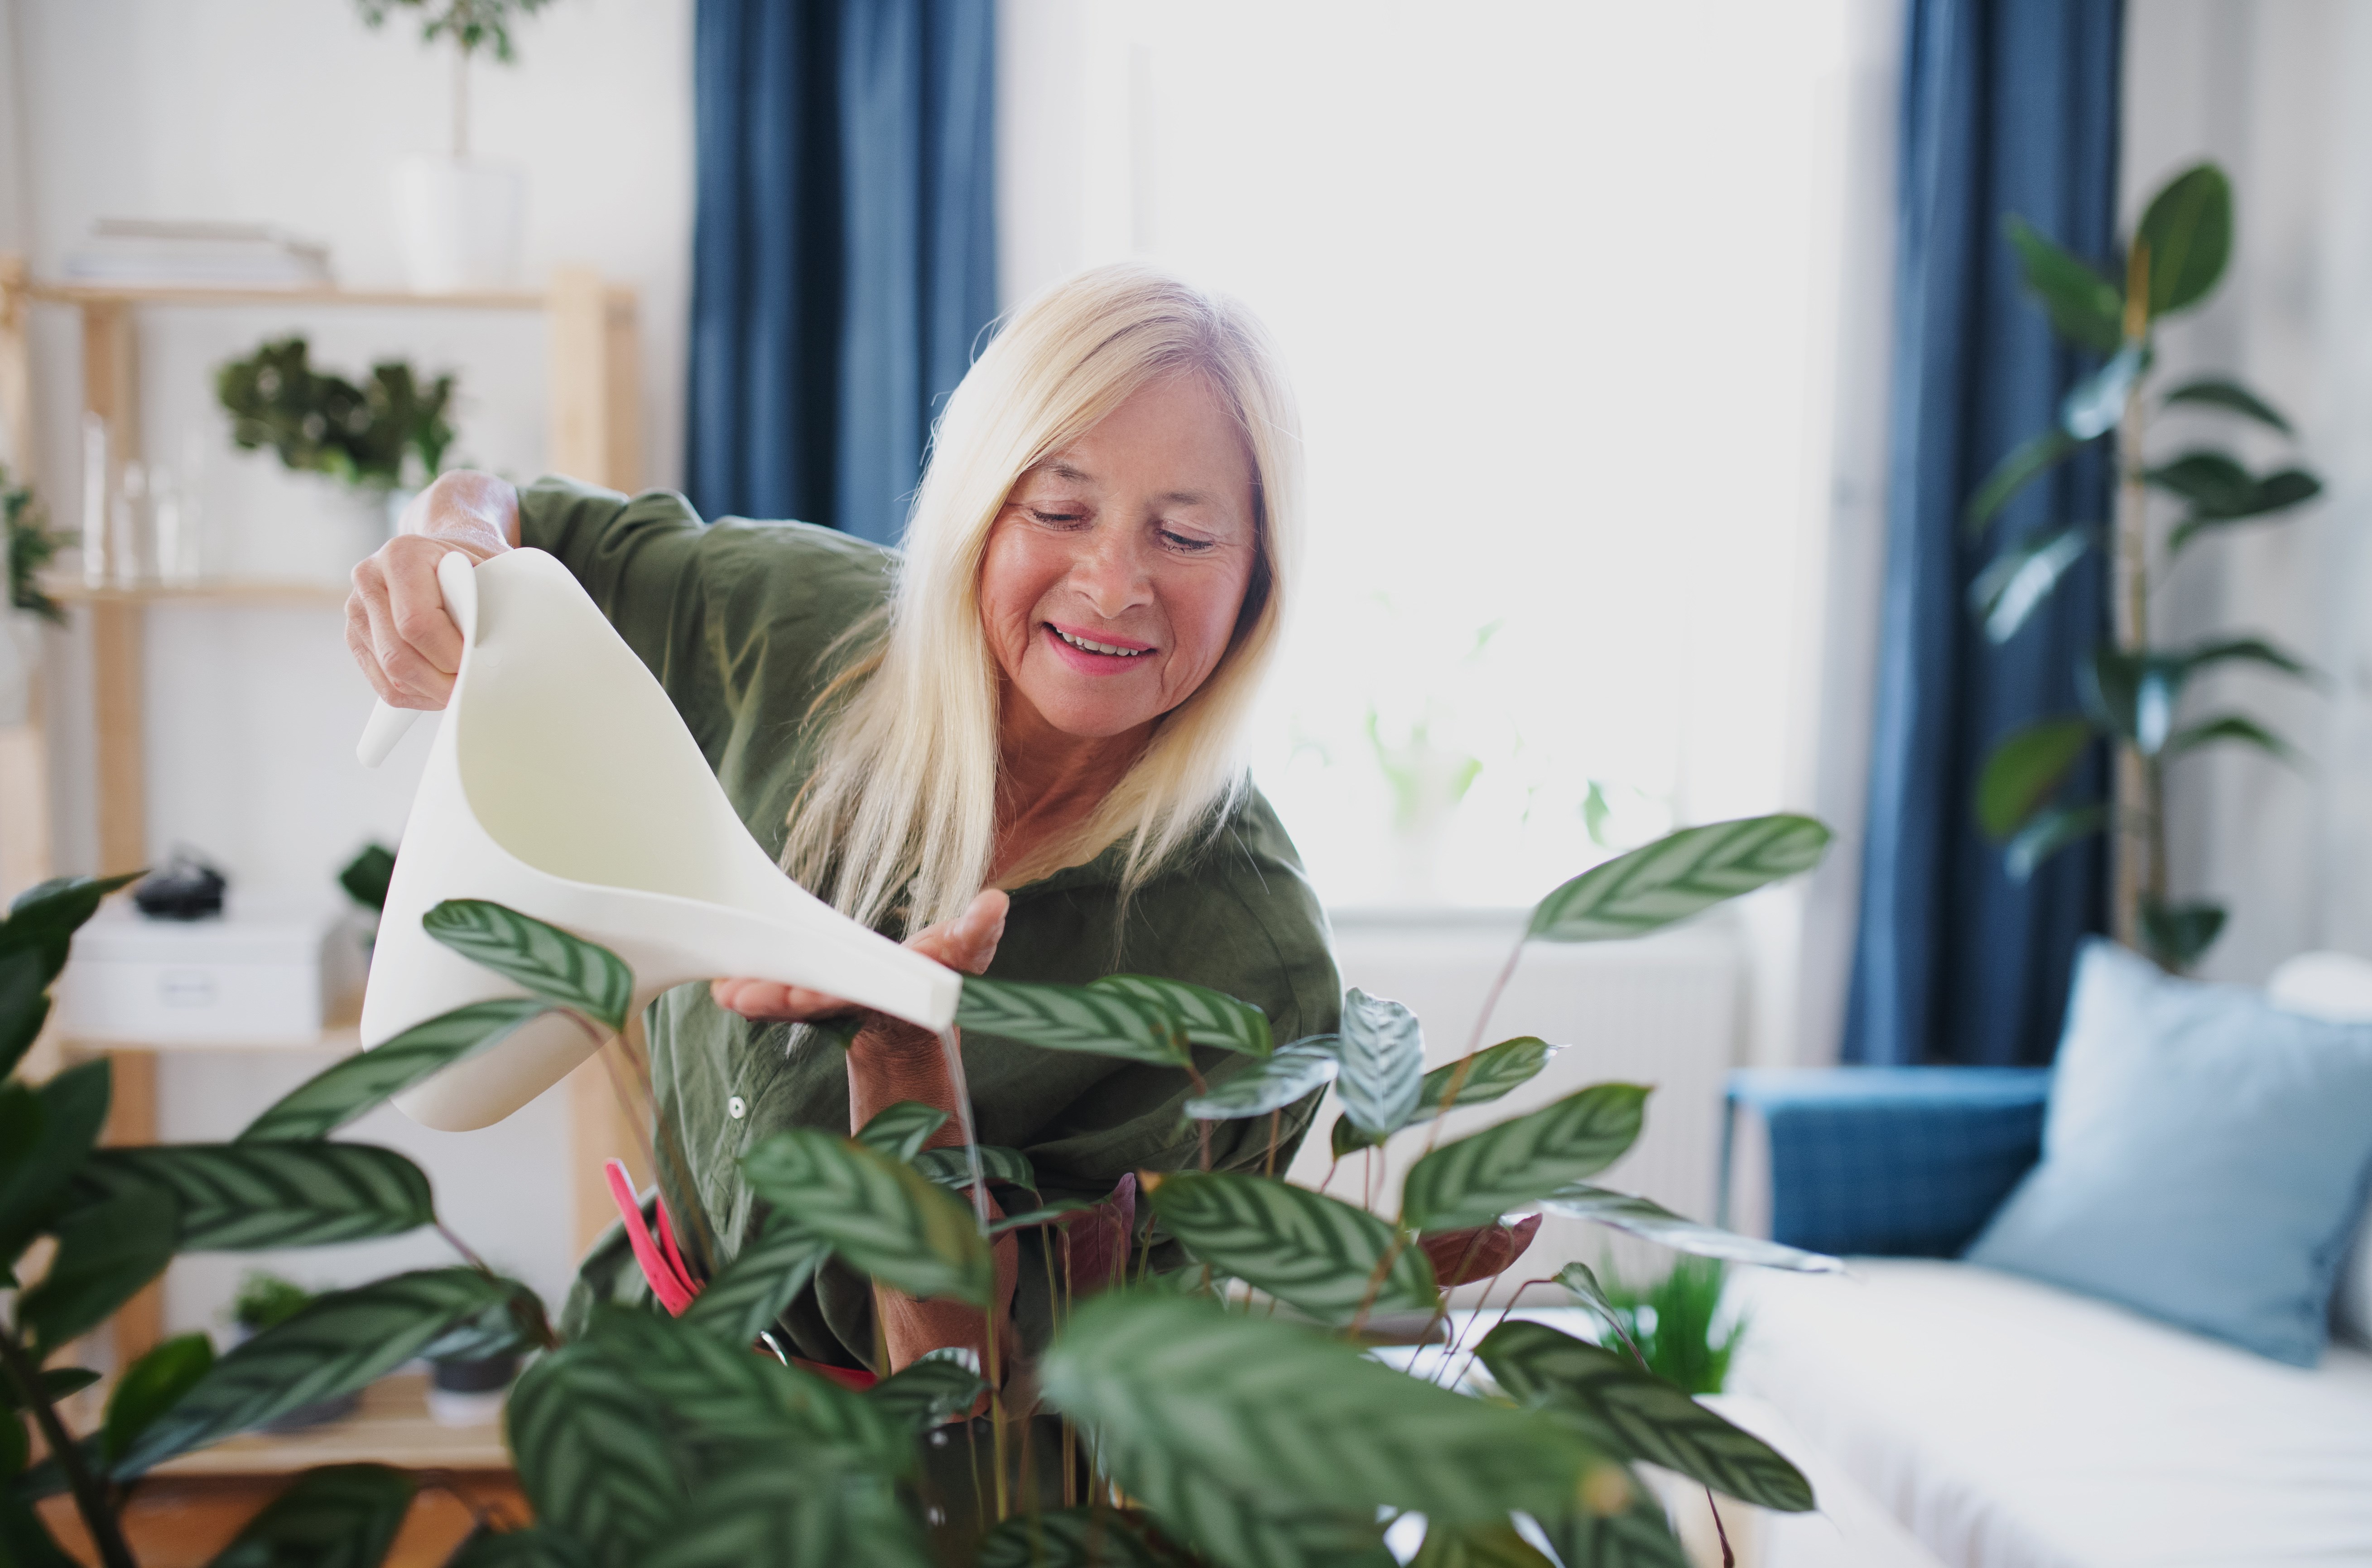 Woman watering plants